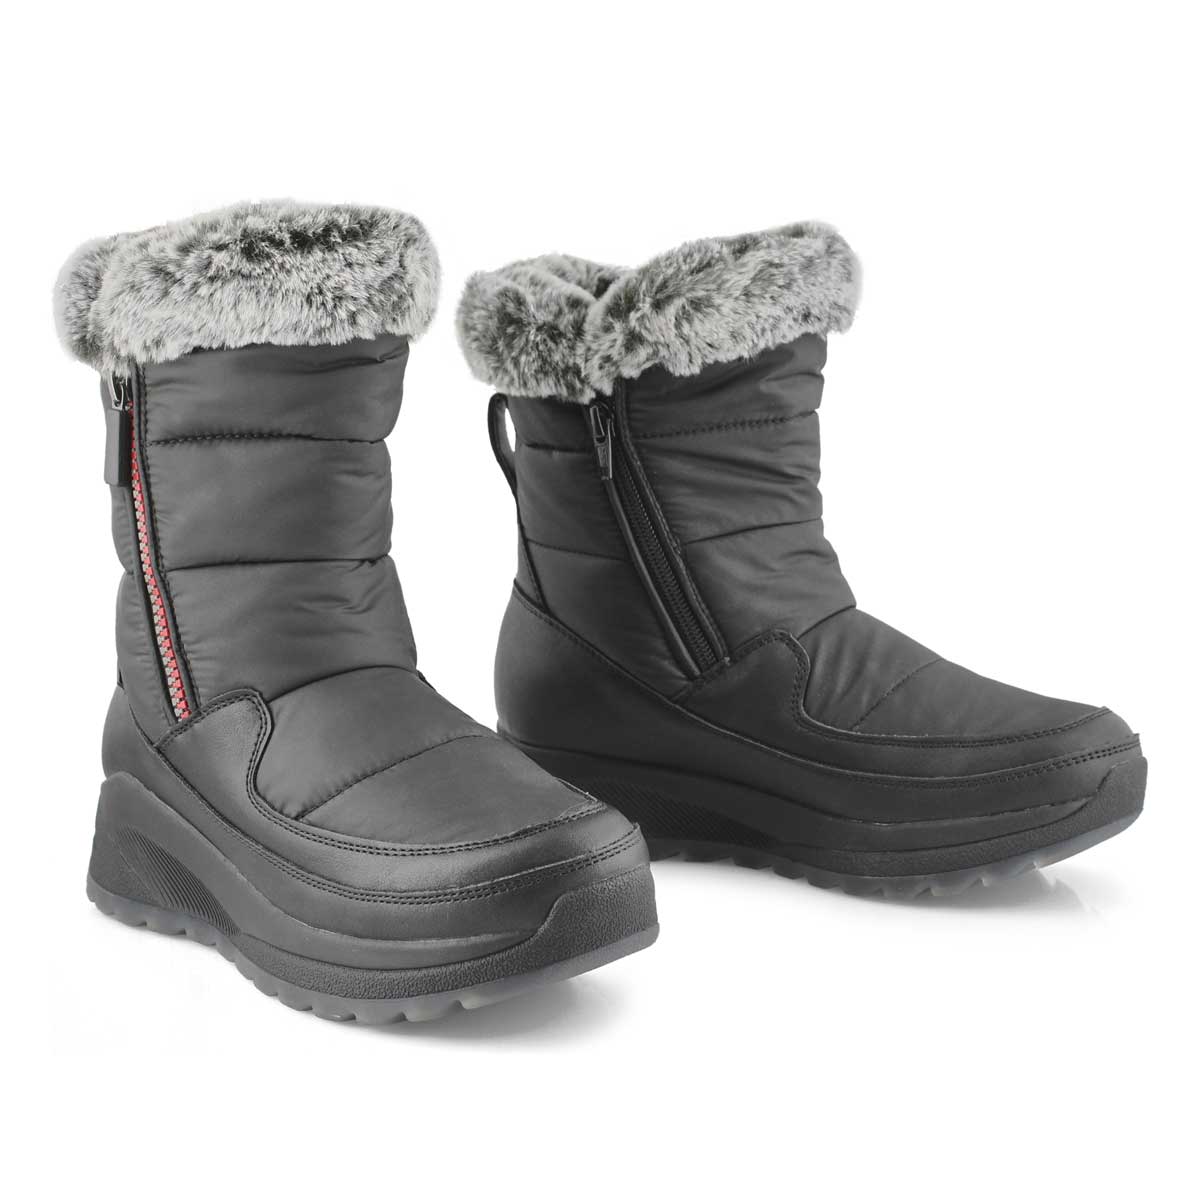 Cougar Women's Seismic Waterproof Winter Boot | eBay